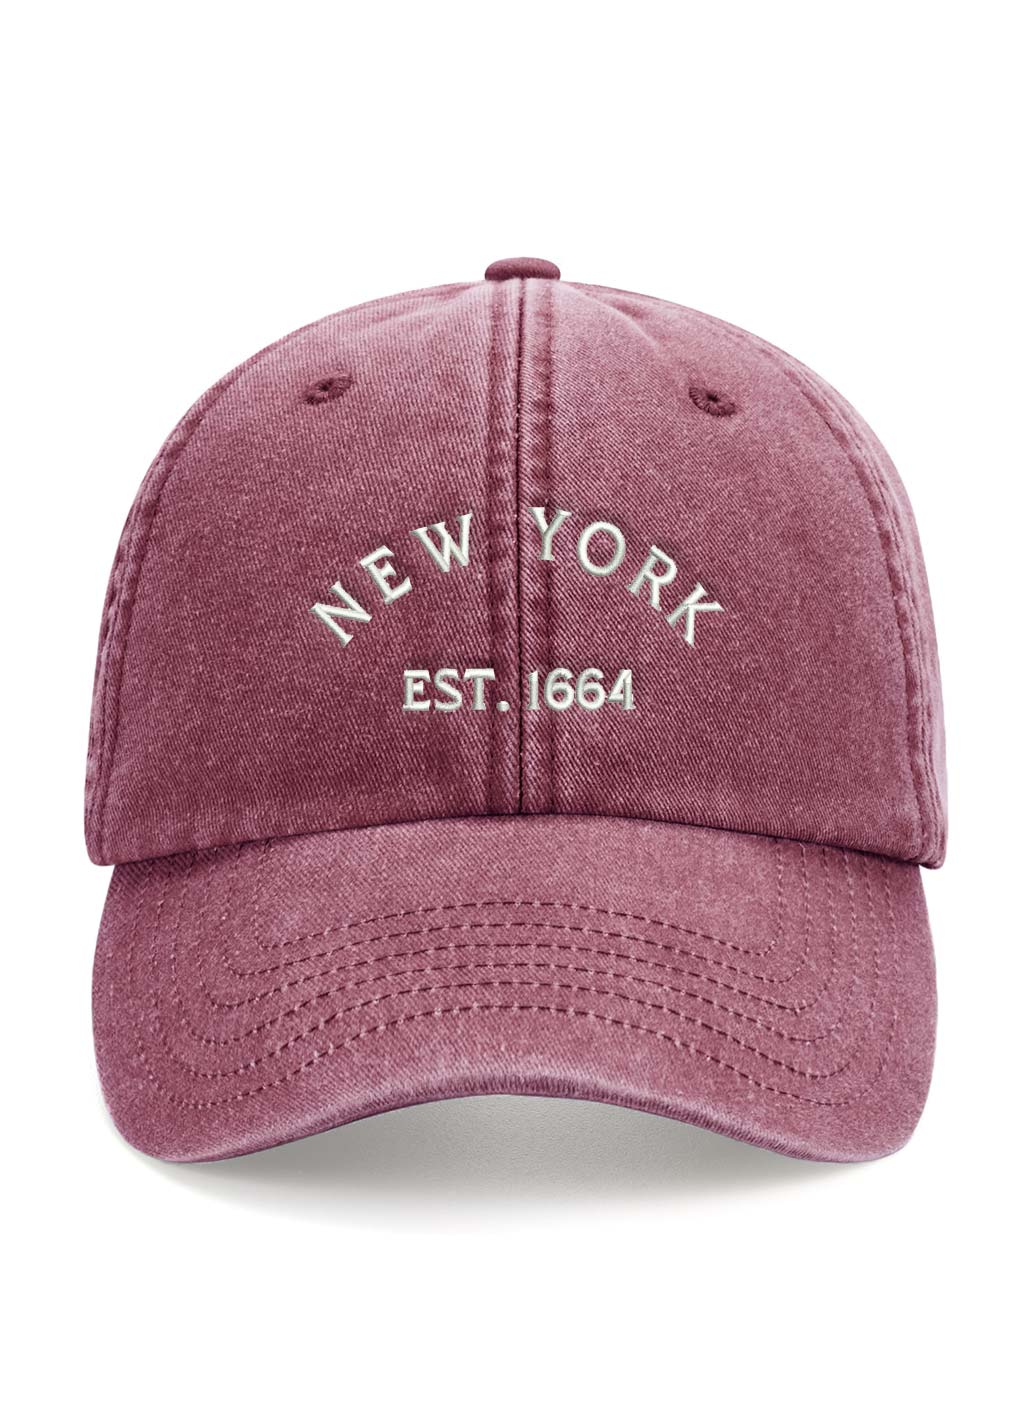 'NEW' Vintage New York Cap - Berry